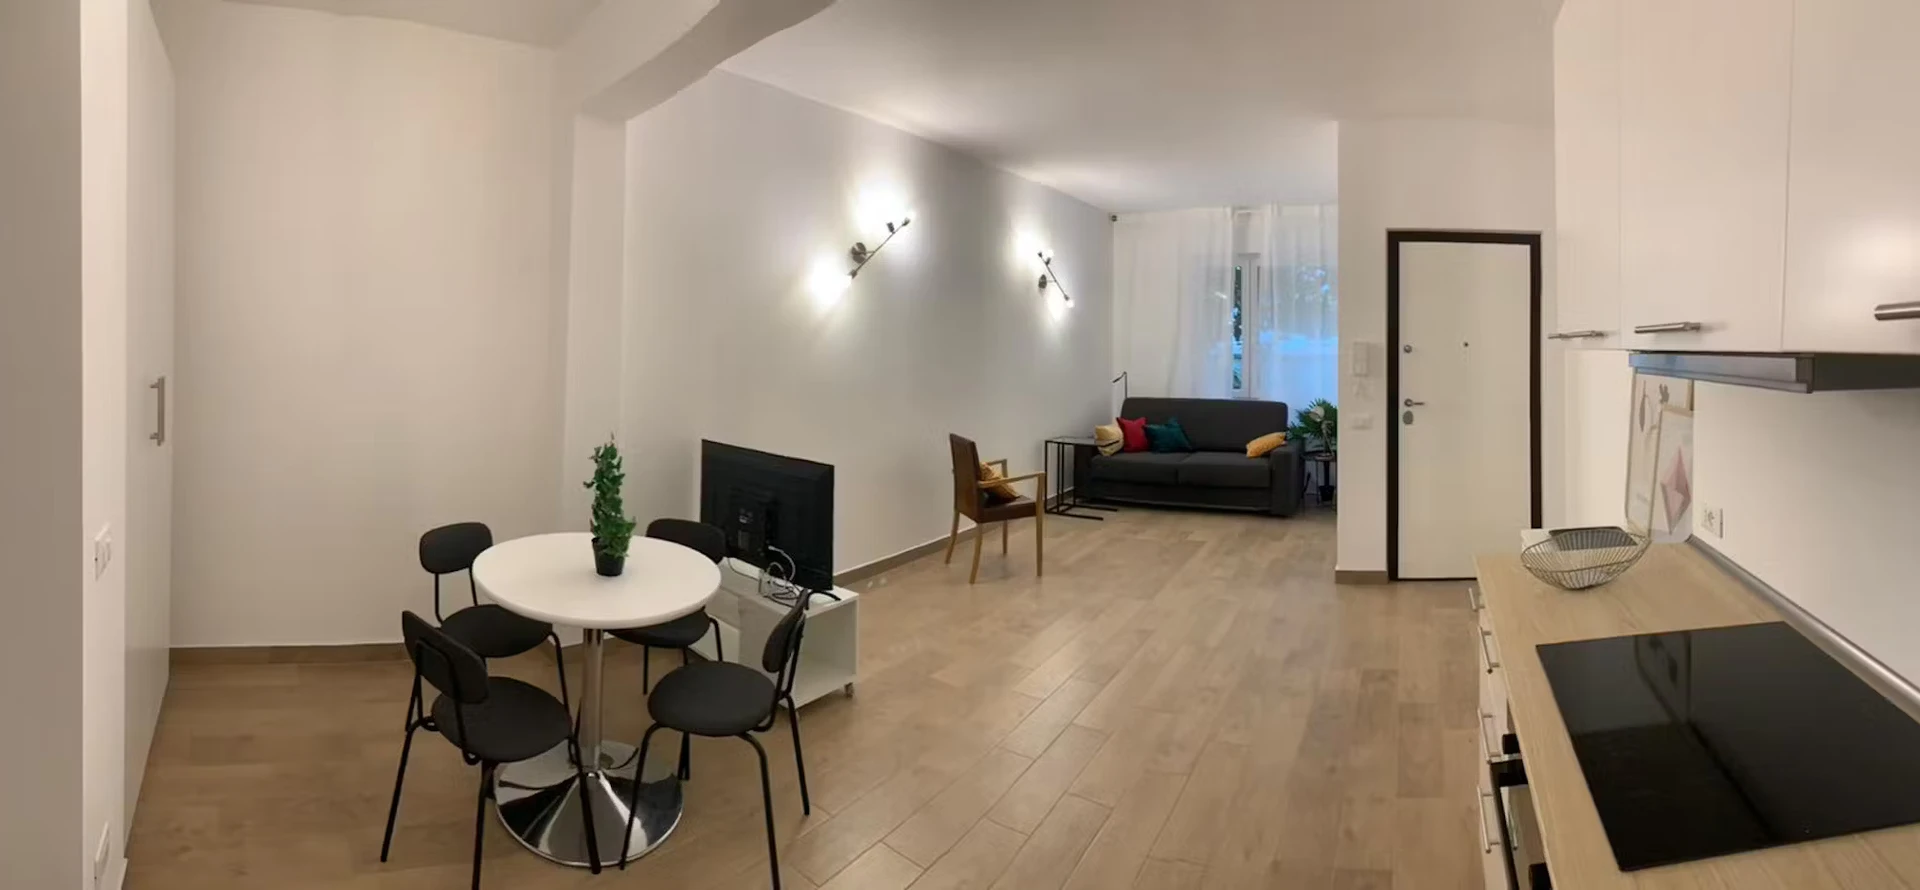 Appartamento in centro a Udine